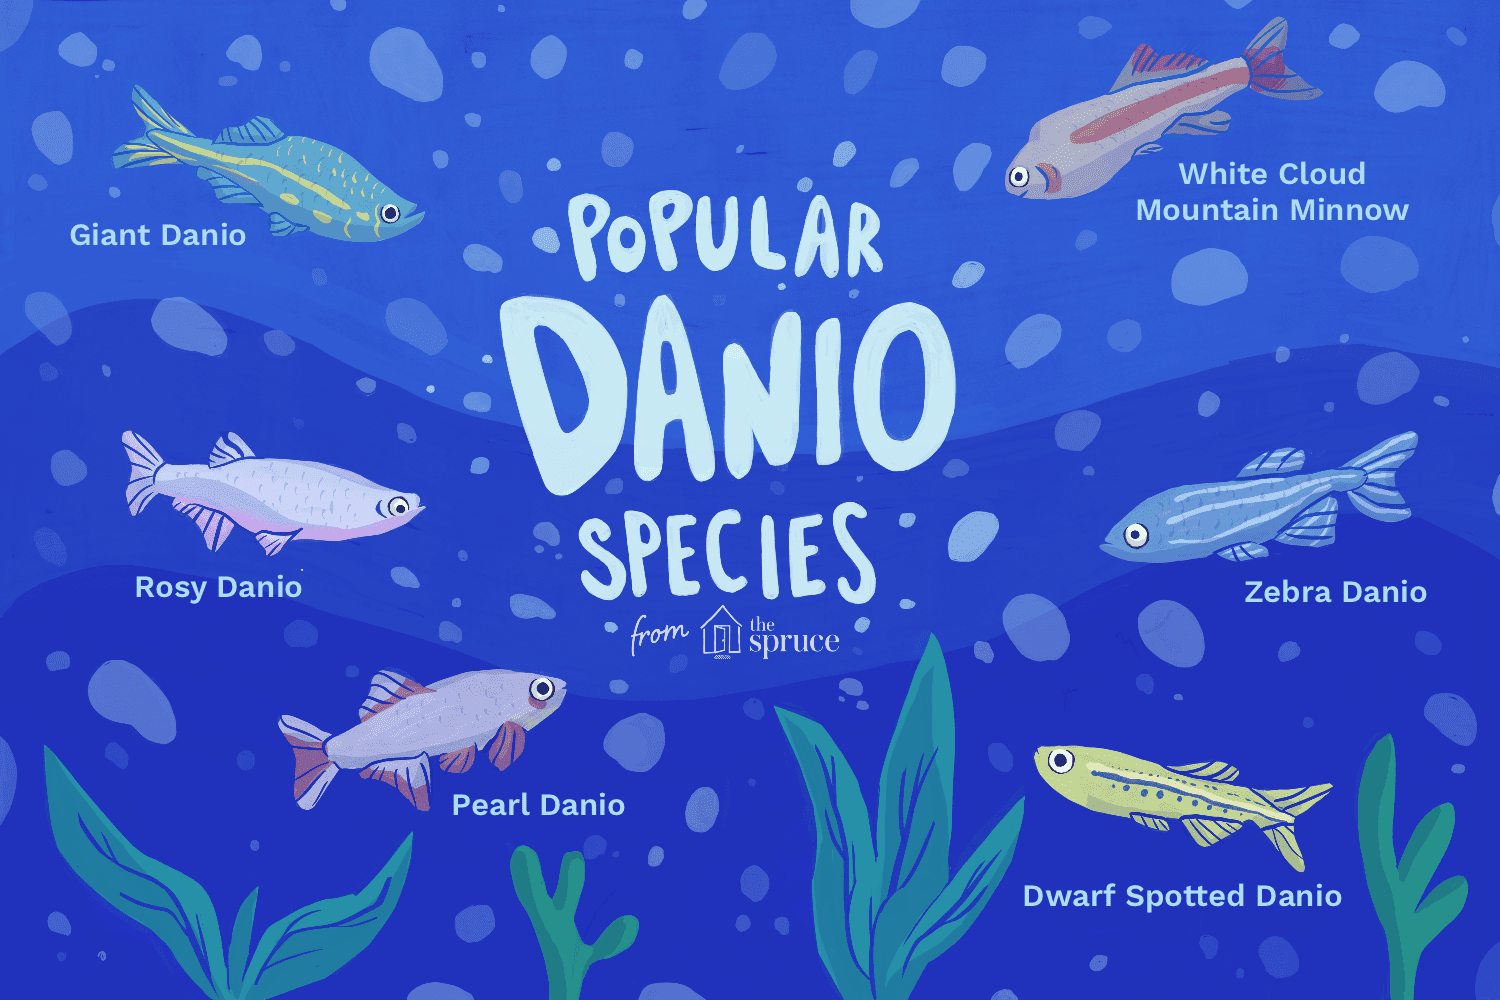 Escolhendo uma espécie de Danio para seu aquário